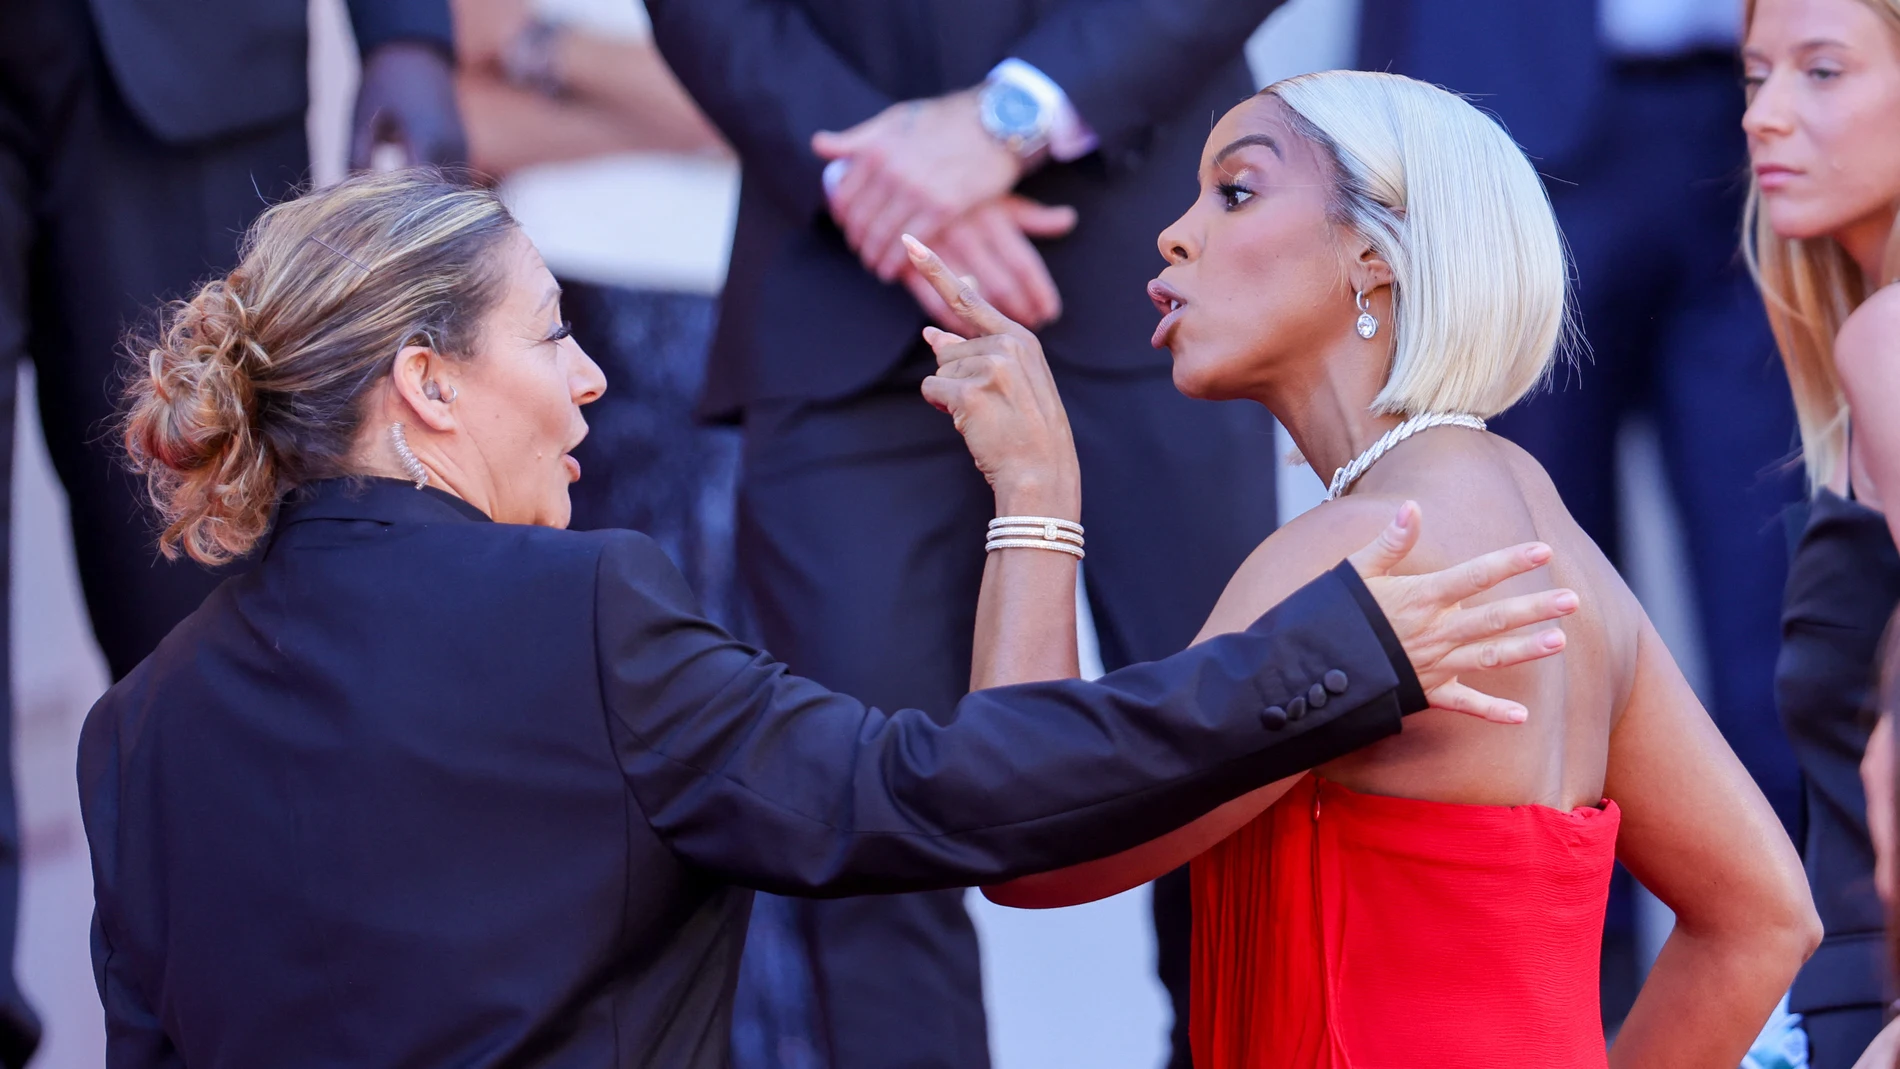 El enfrentamiento entre Kelly Rowland y una empleada de seguridad de Cannes